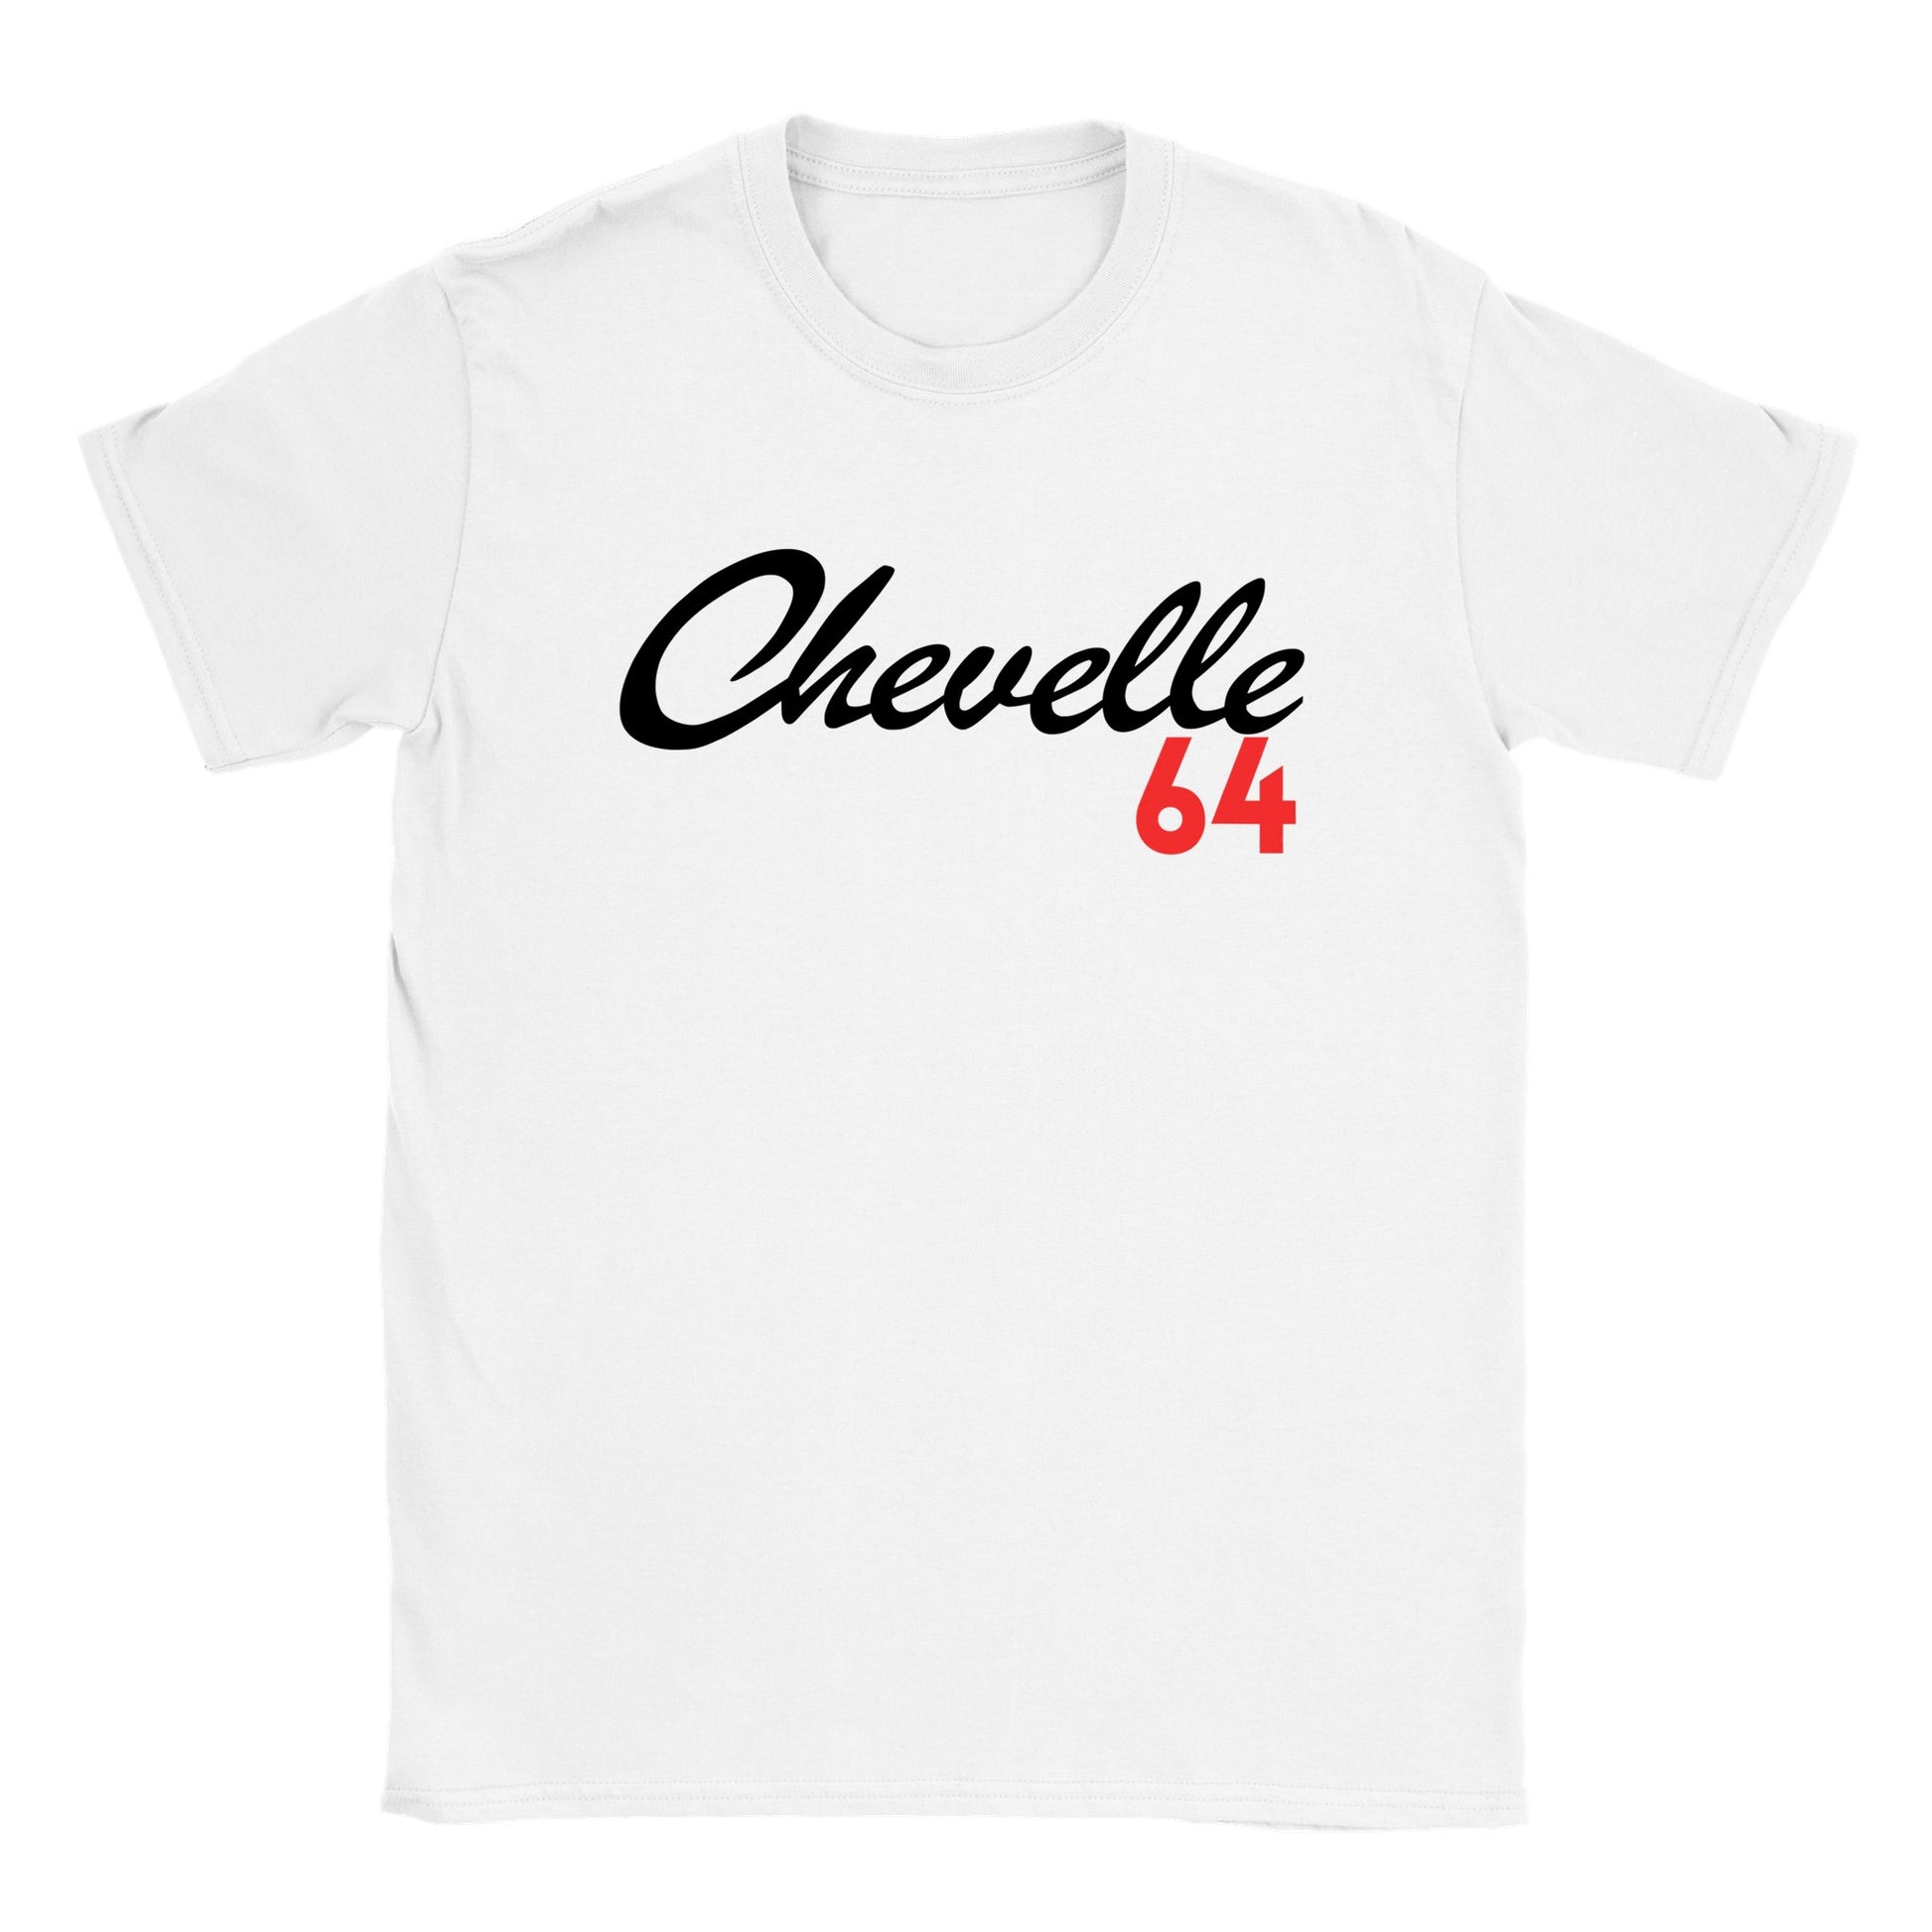 64 Chevelle T-shirt - Mister Snarky's